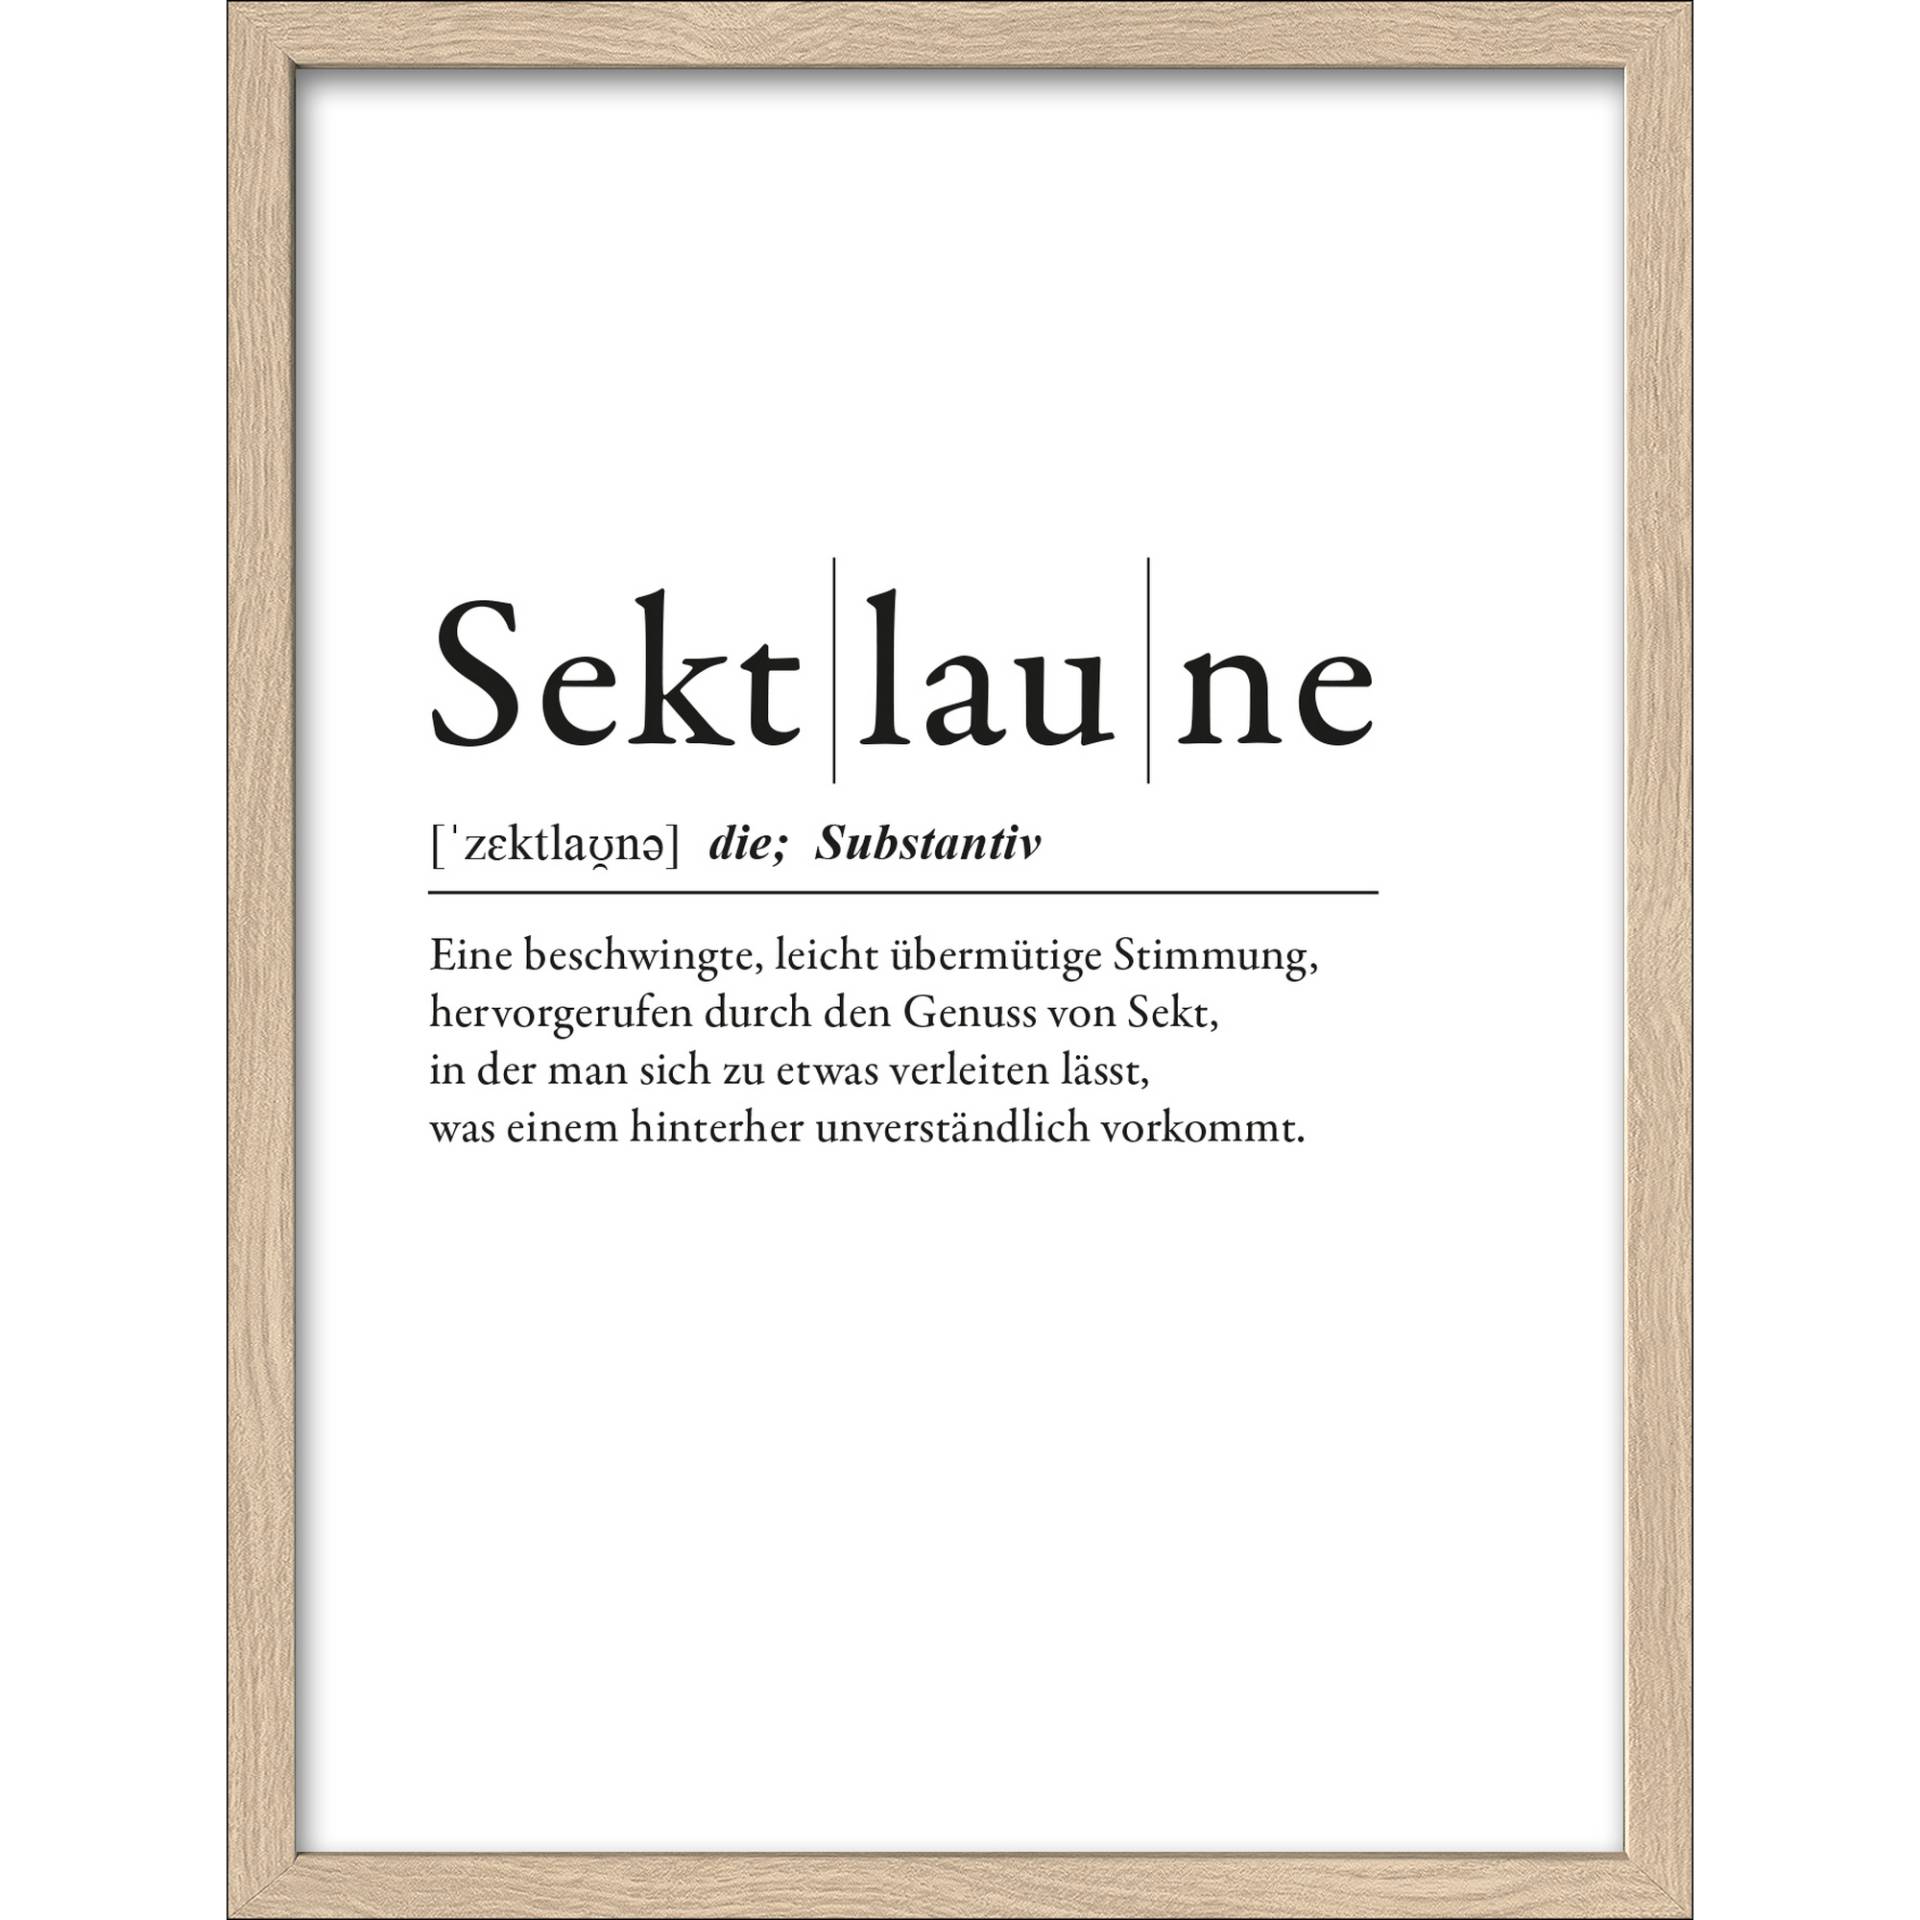 Pro-Art Kunstdruck Framed-Art 'Sektlaune' 33 x 43 cm von Pro-Art